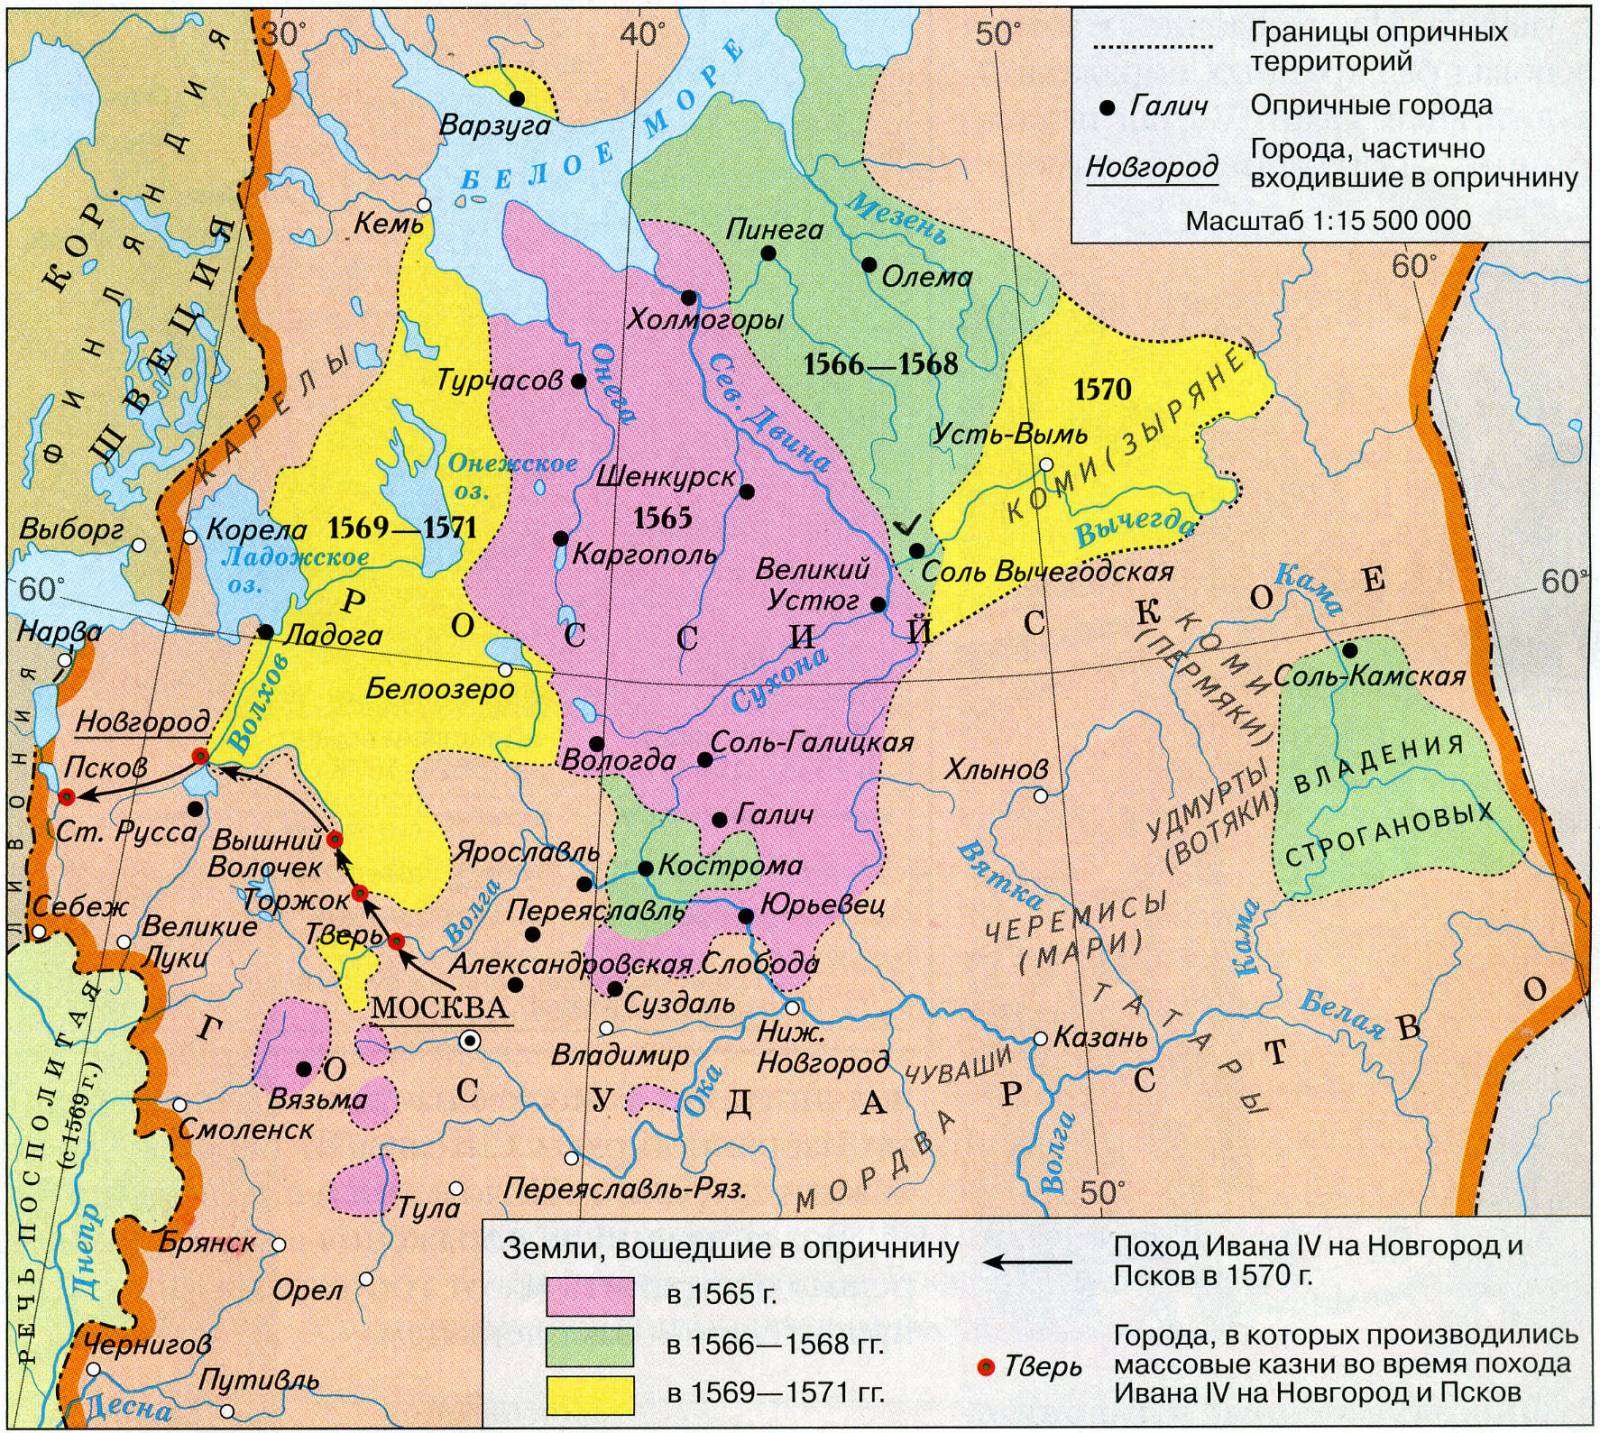 1569 г. Иван IV Грозный совершил поход на Новгород